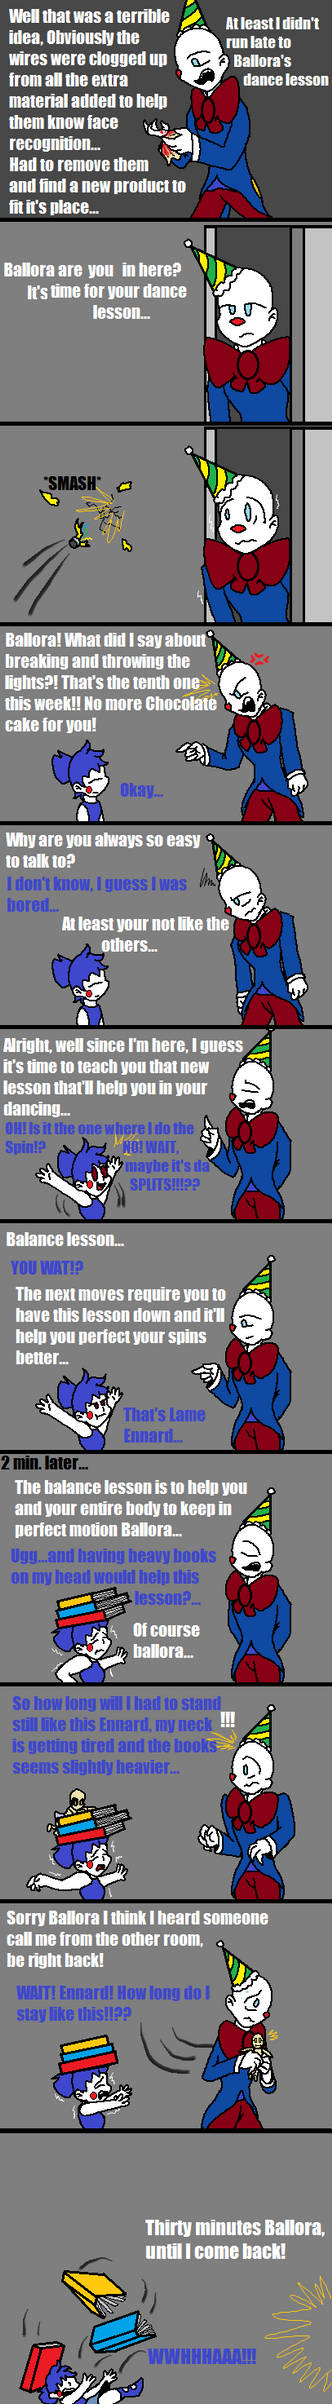 Dancing Lessons (FNAF Comic)